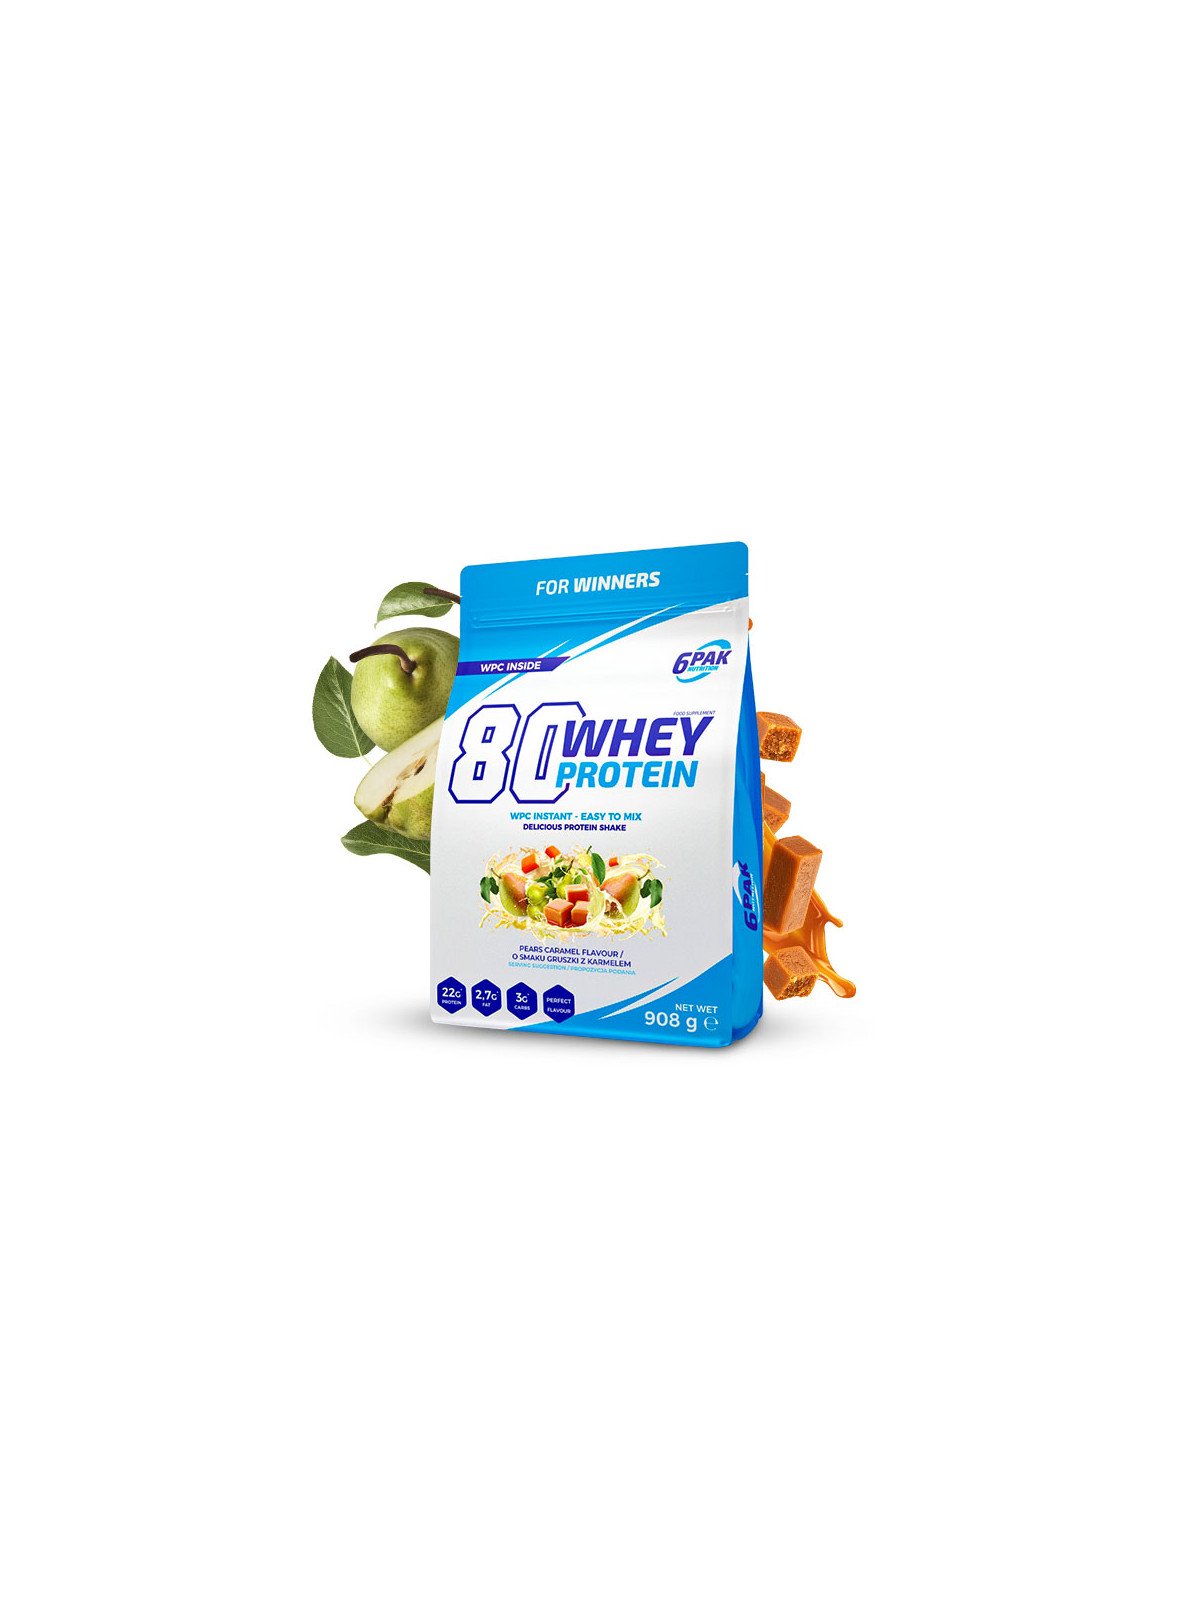 Białko 80 Whey Protein - 908g - Pears-Caramel